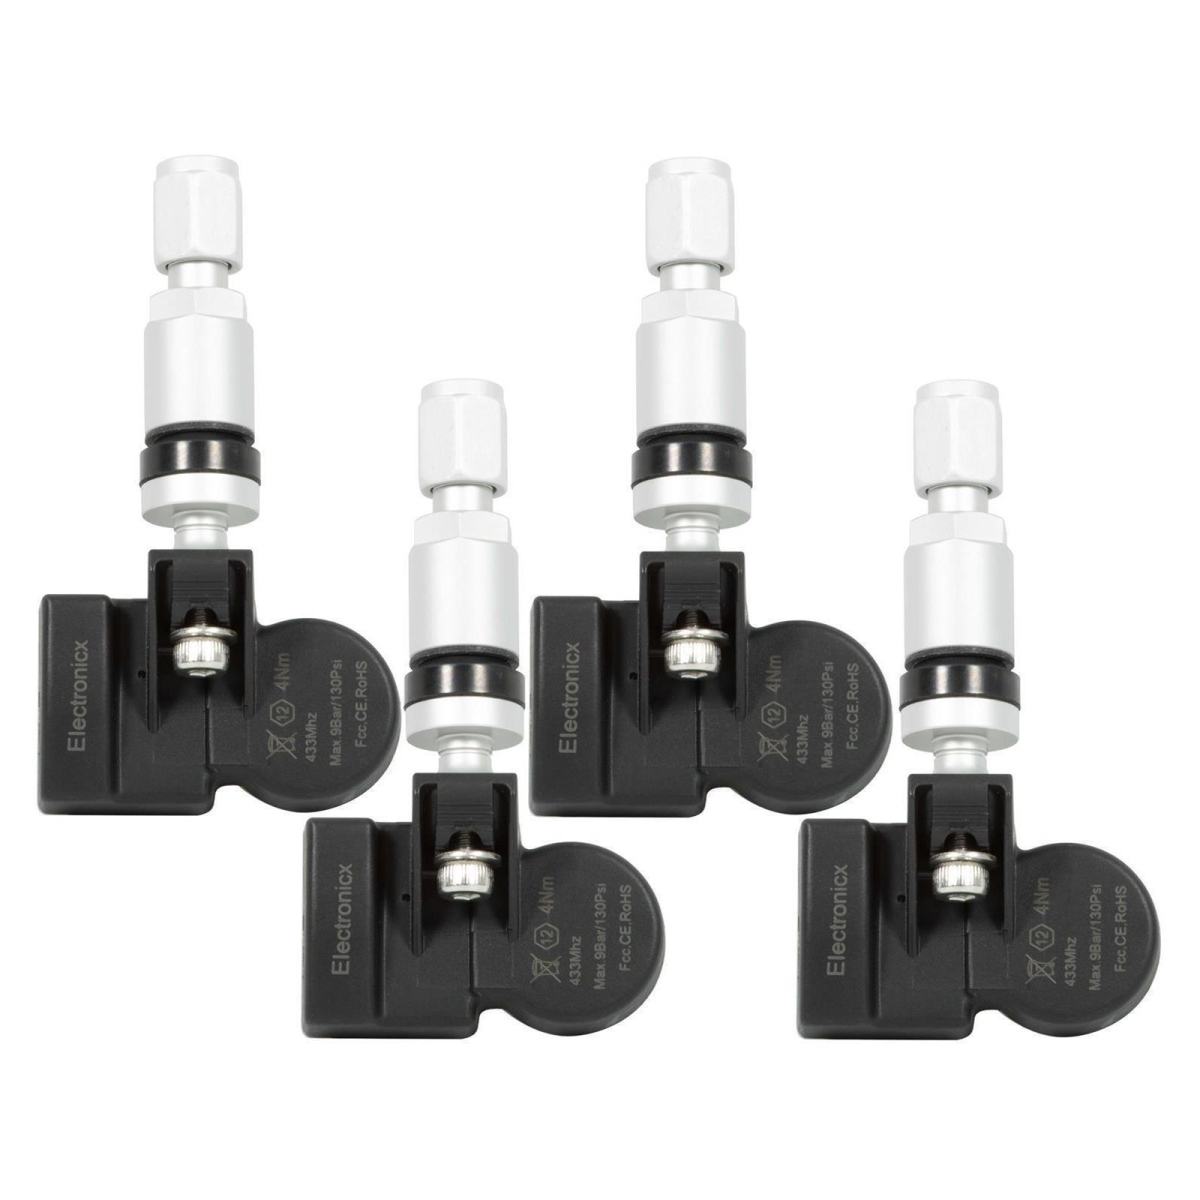 4x RDKS TPMS tire pressure sensors metal valve for Alpina BMW Mini 1 Series 2 Series 3 Series 4 Series i3 i8 M2 M3